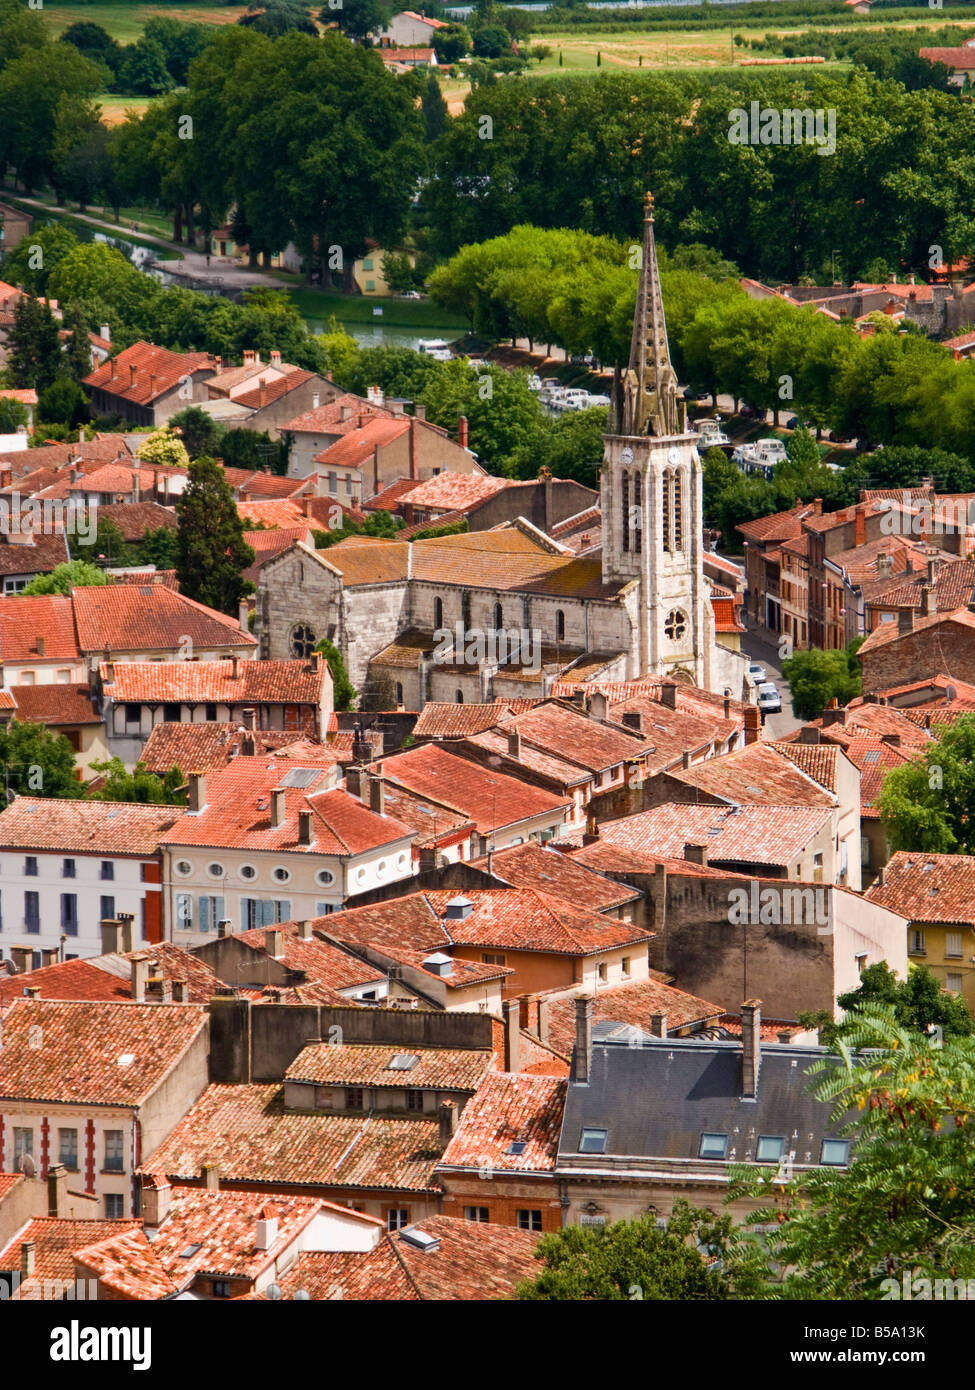 Les toits rouges de la ville historique de Moissac, Tarn et Garonne, France, Europe Banque D'Images